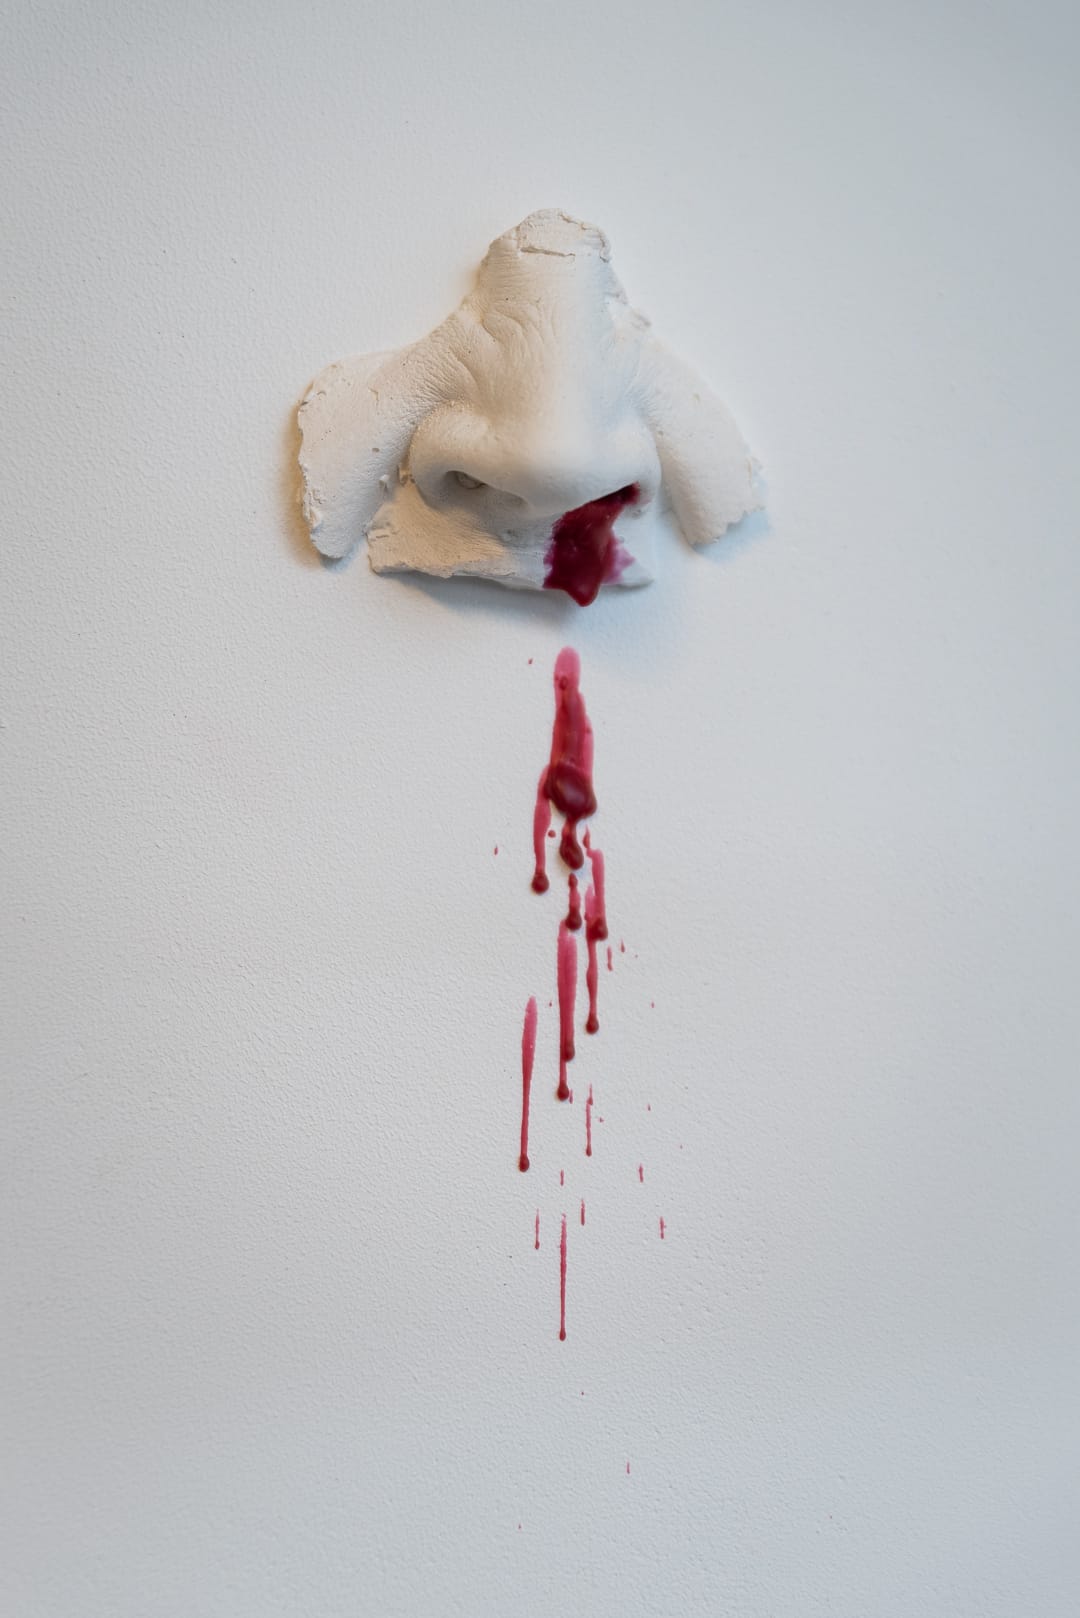 kunst - Ingrid Slaa - beeld - neus - gips